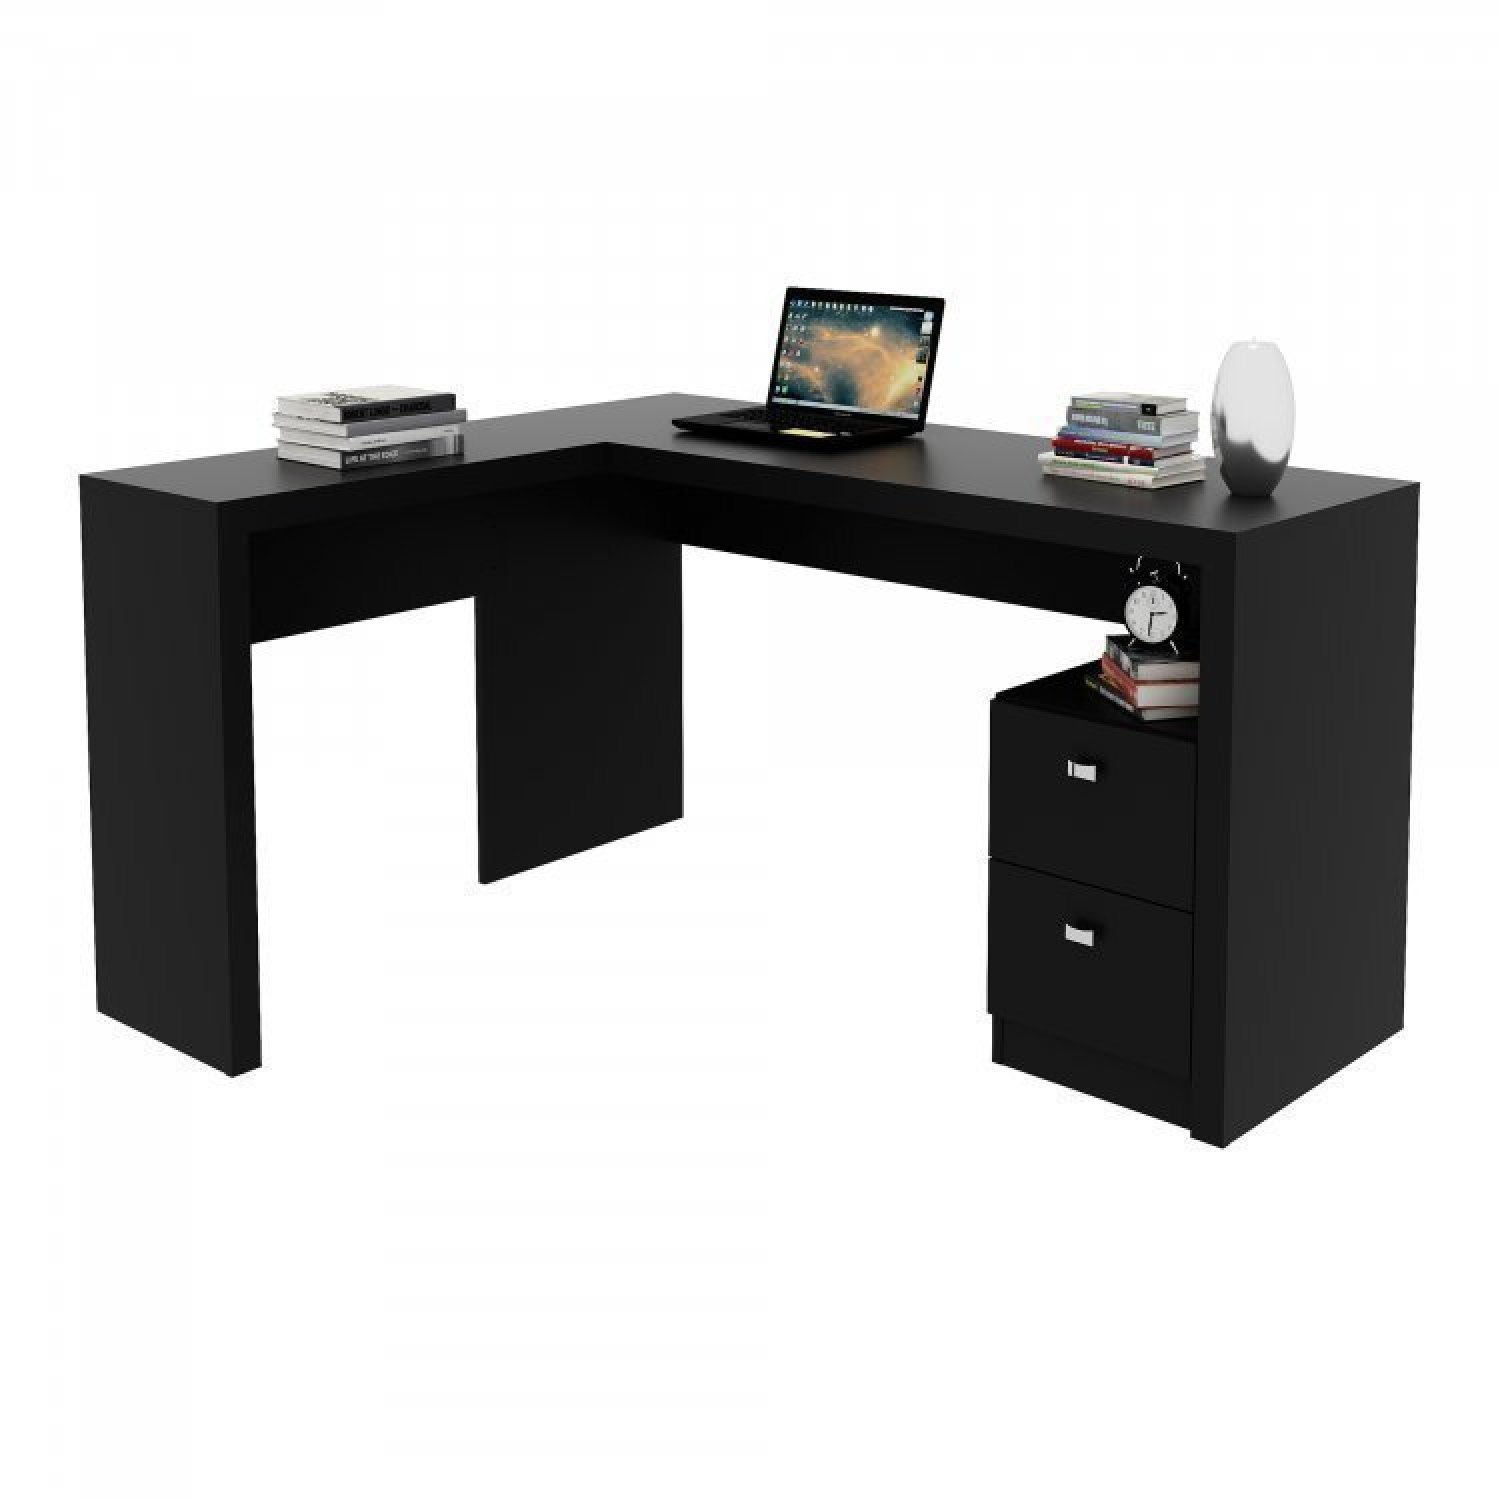 Conjunto Home Office 2 Peças 1 Mesa para Escritório em L com 1 Balcão Espresso Móveis - 2